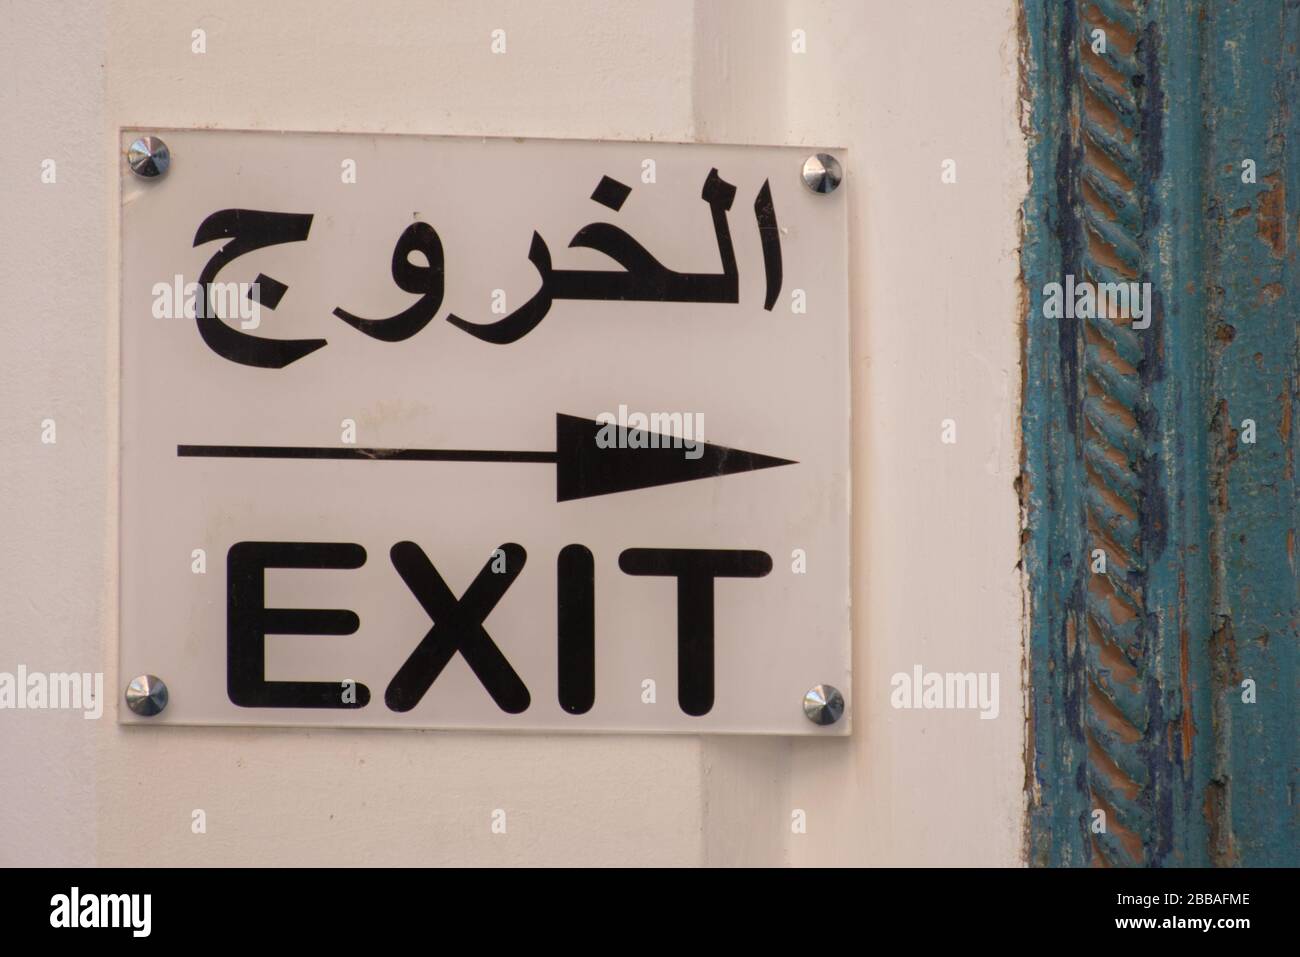 Un signe directionnel en arabe et en anglais. Le texte traduit de la partie arabe en anglais est -EXIT-. Banque D'Images